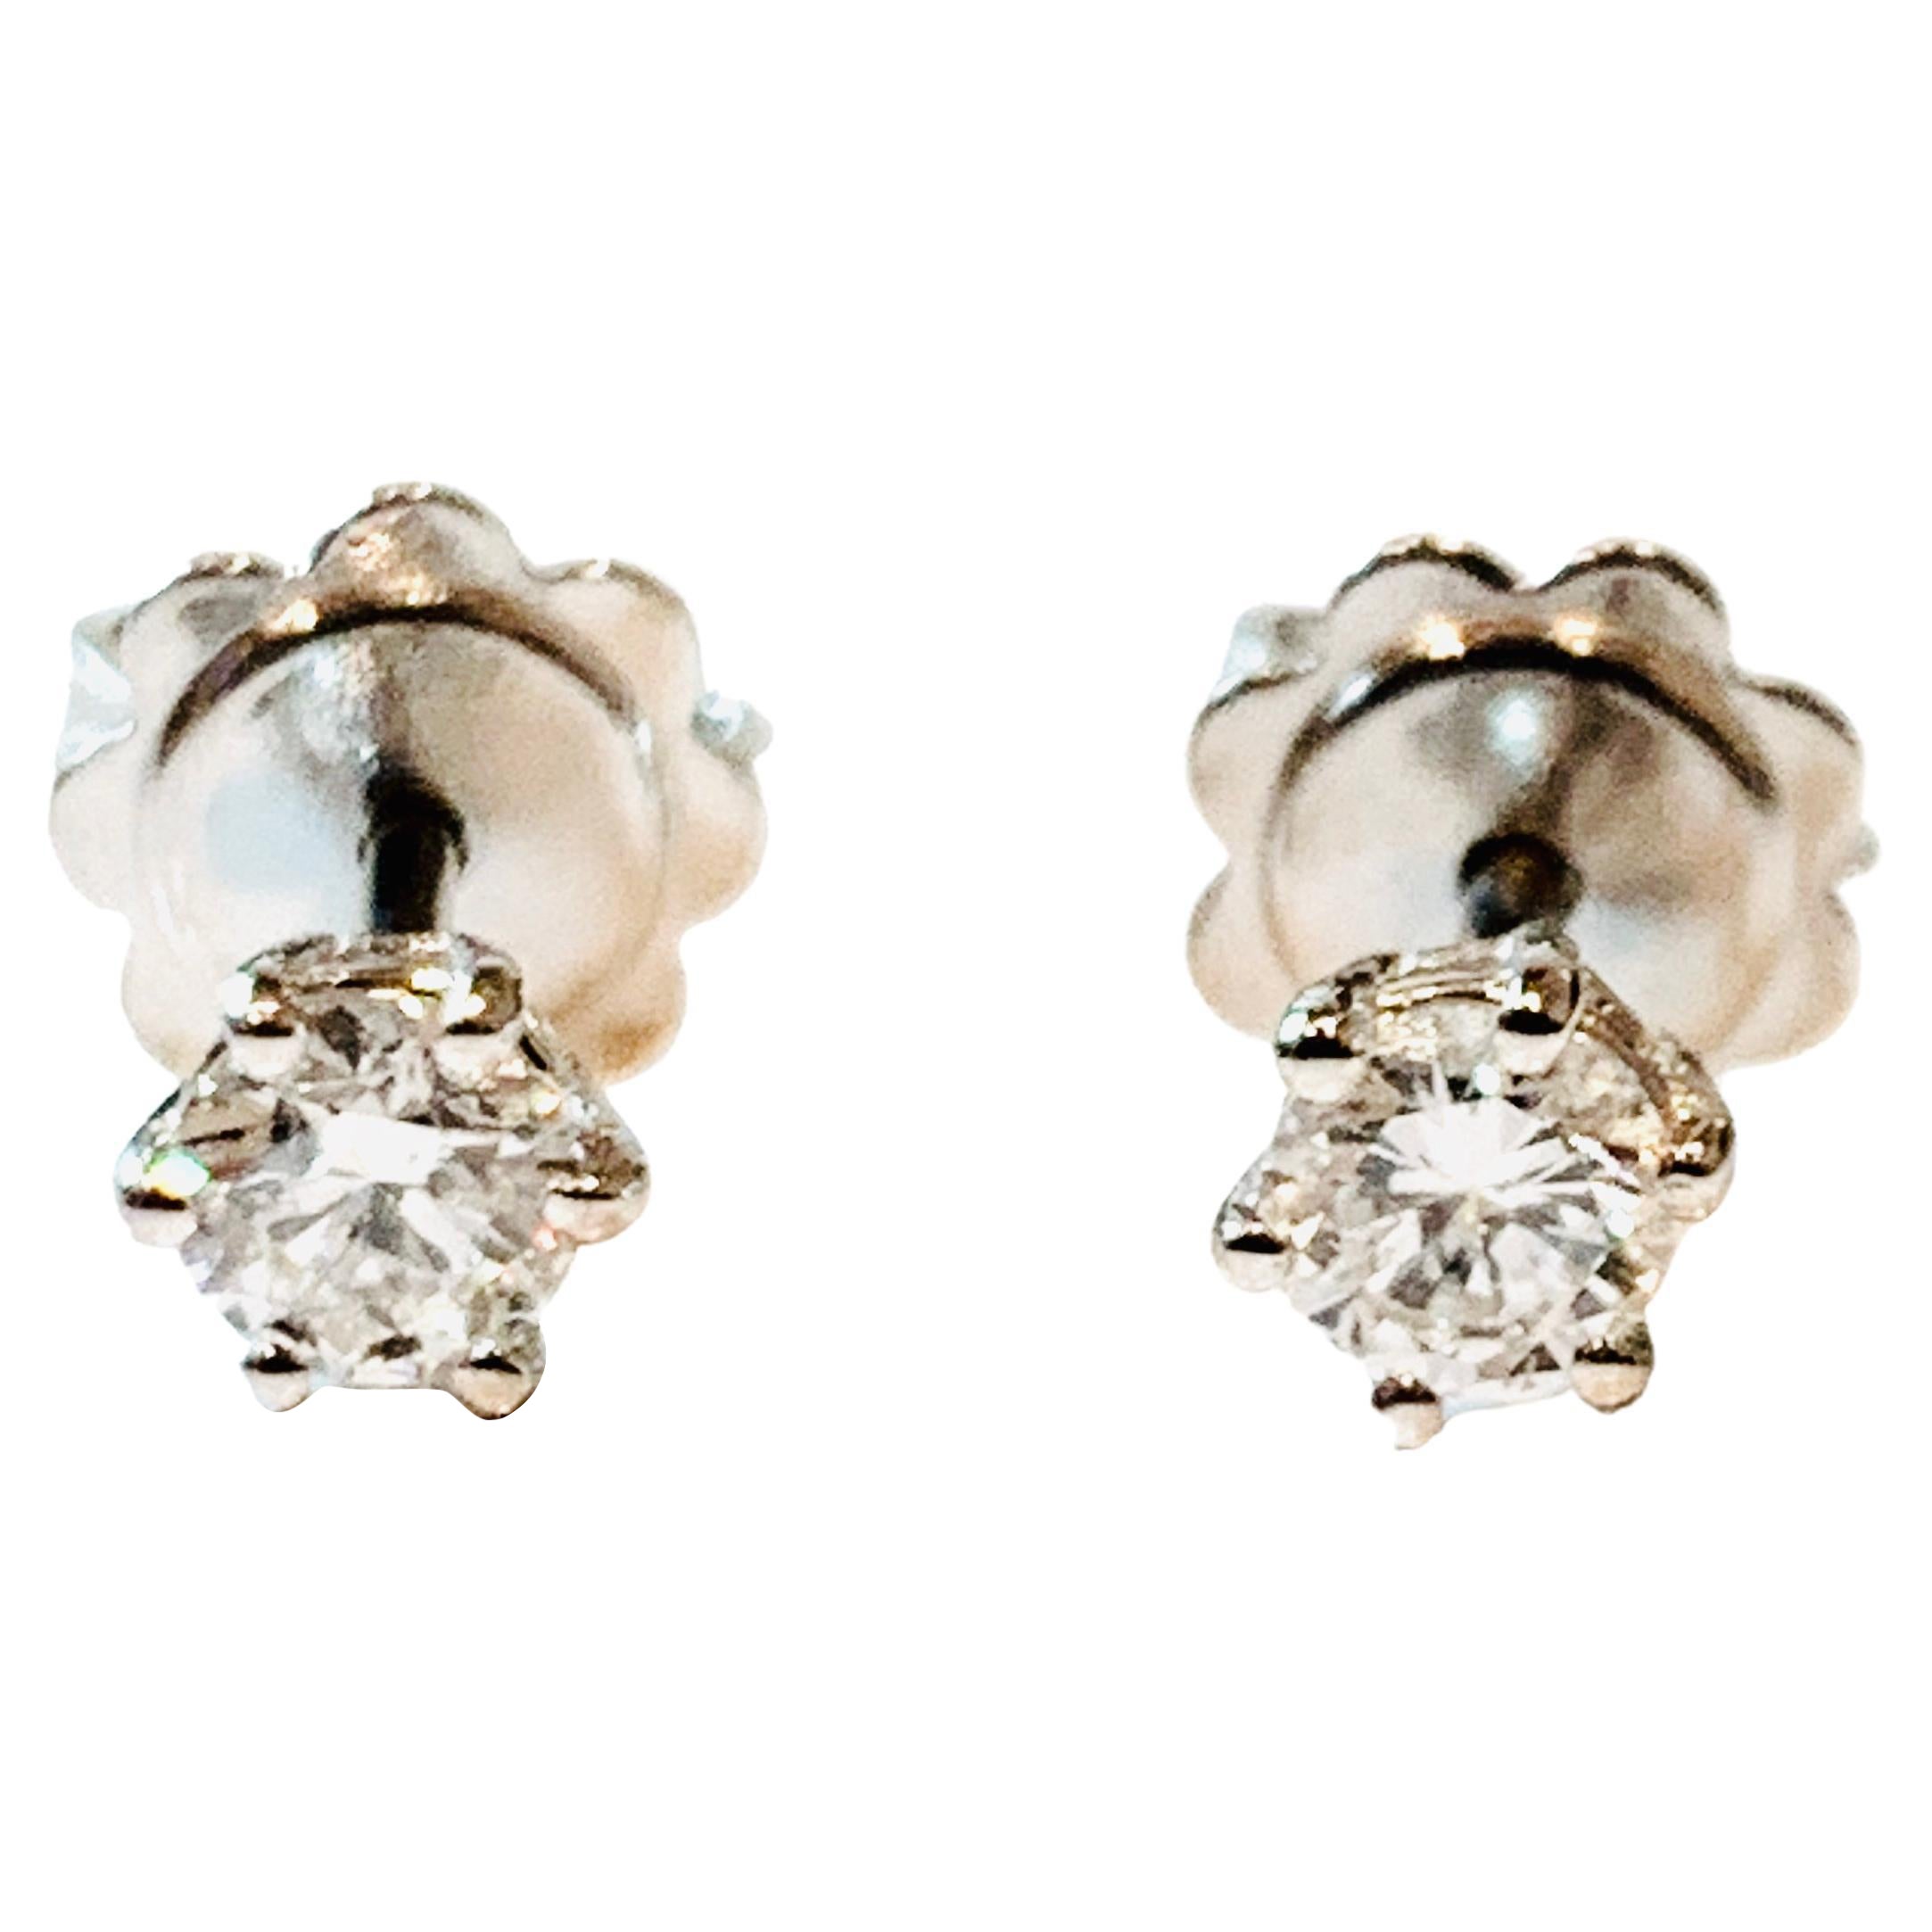 HRD Certified 0.50 Carat Star Diamonds Set in 18Kt White Gold Stud Earrings